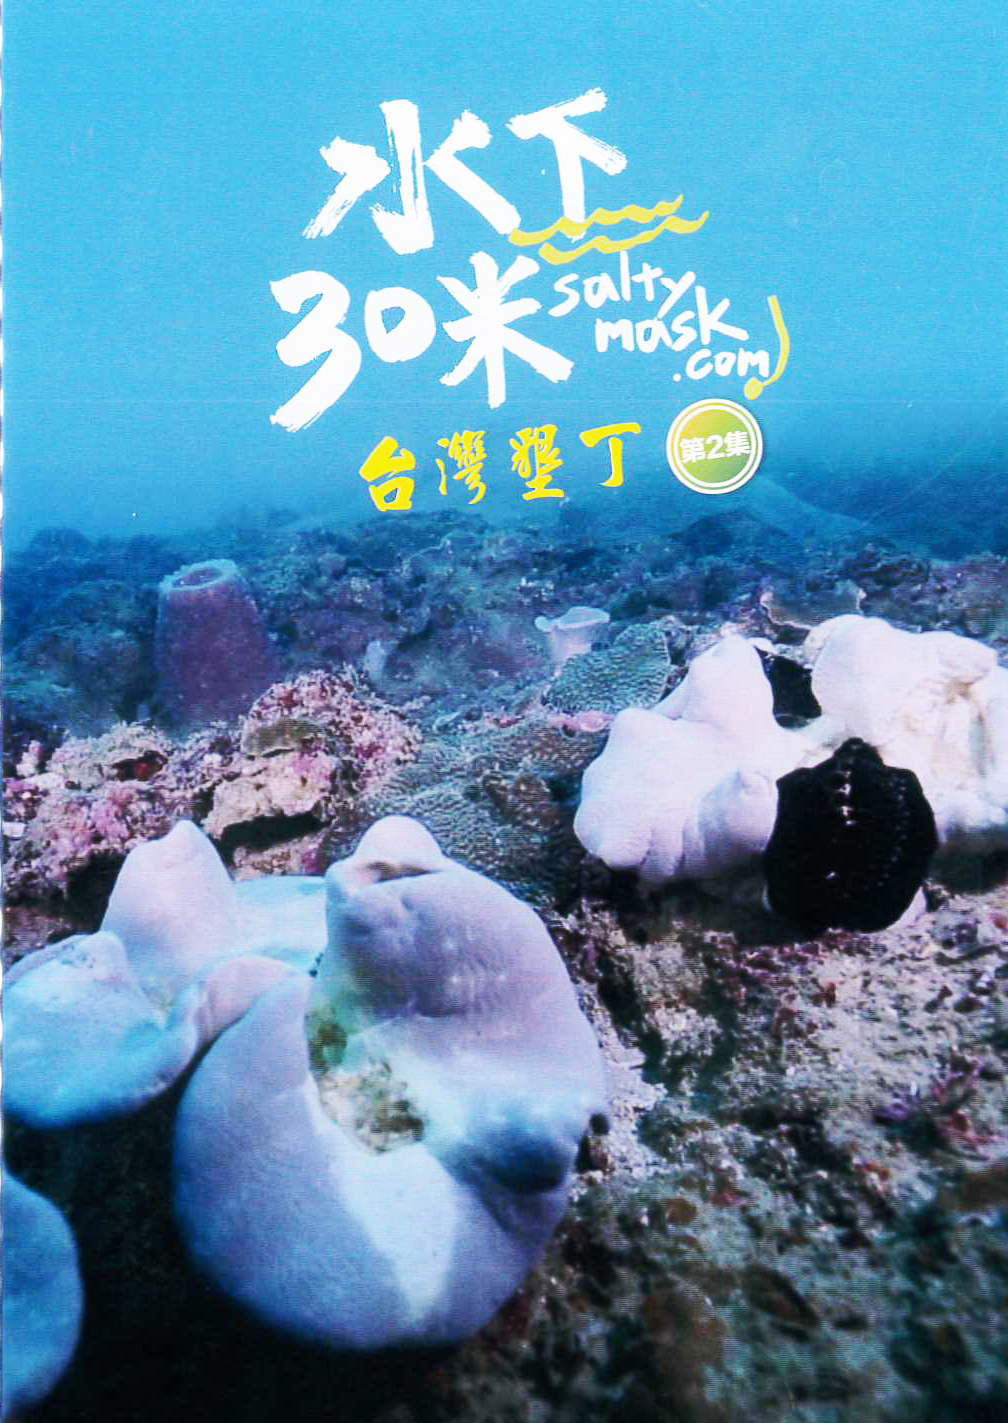 水下30米:台灣墾丁[普遍級:紀錄片] : 30 Meters Underwater : Kenting, Taiwan